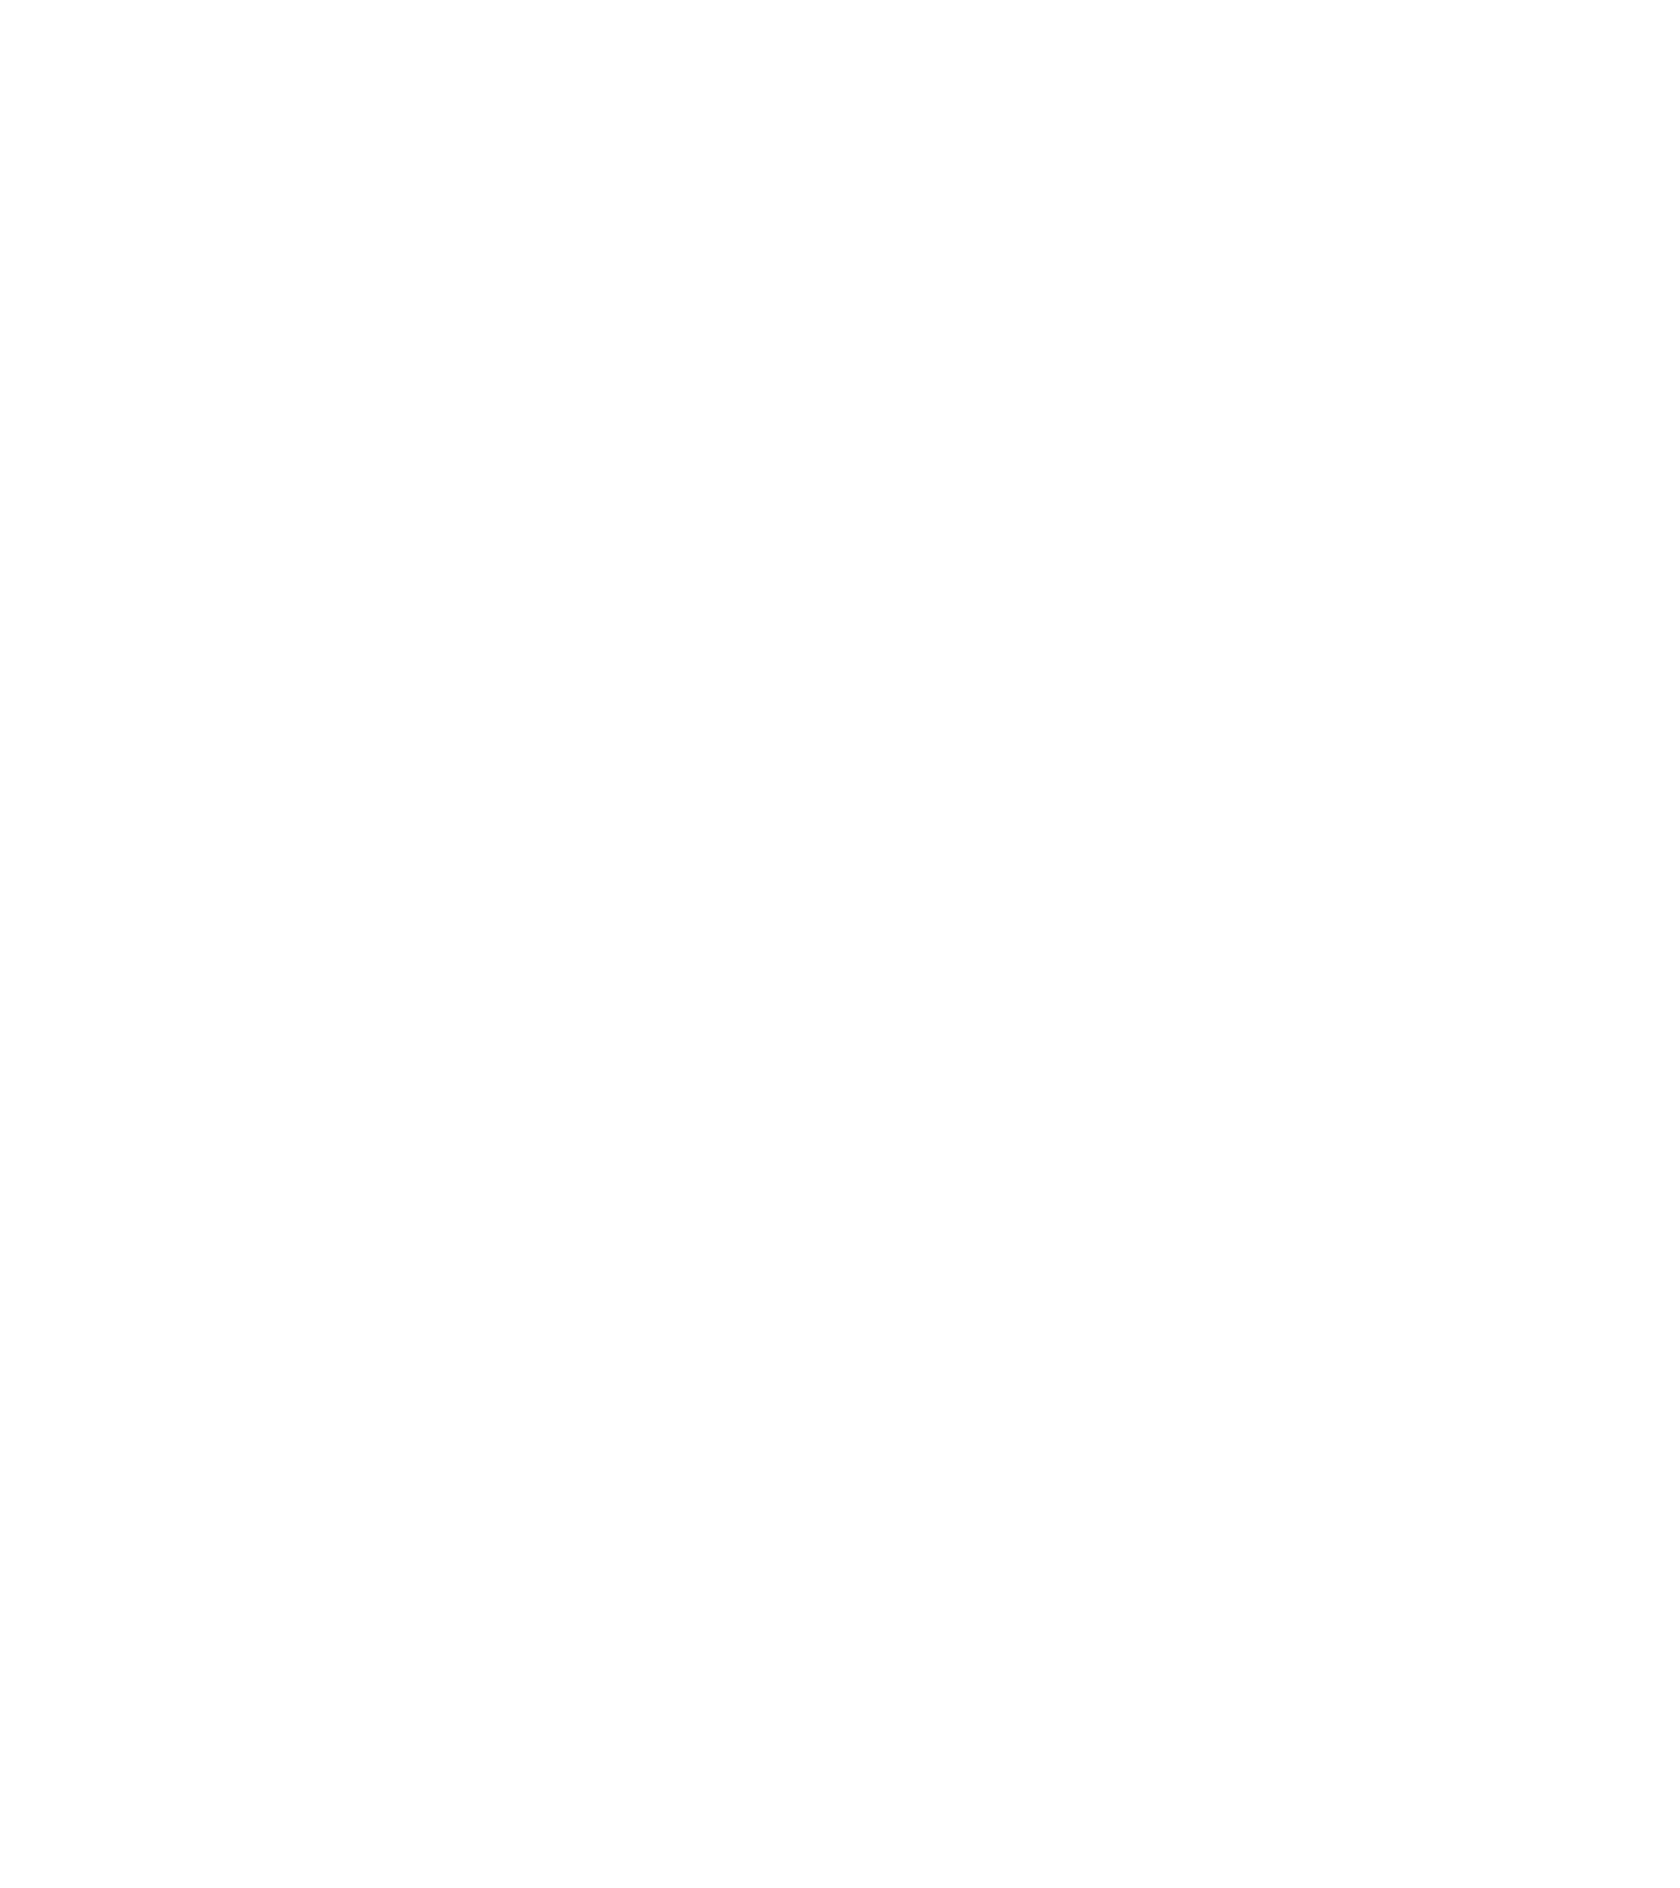 Лот №22: Картина «Зимние ели». Оргалит, масло, 30х35 см (с рамой 40х54), 2000 г. (автор: Сляднев А.). Начальная цена: 30 000 руб.